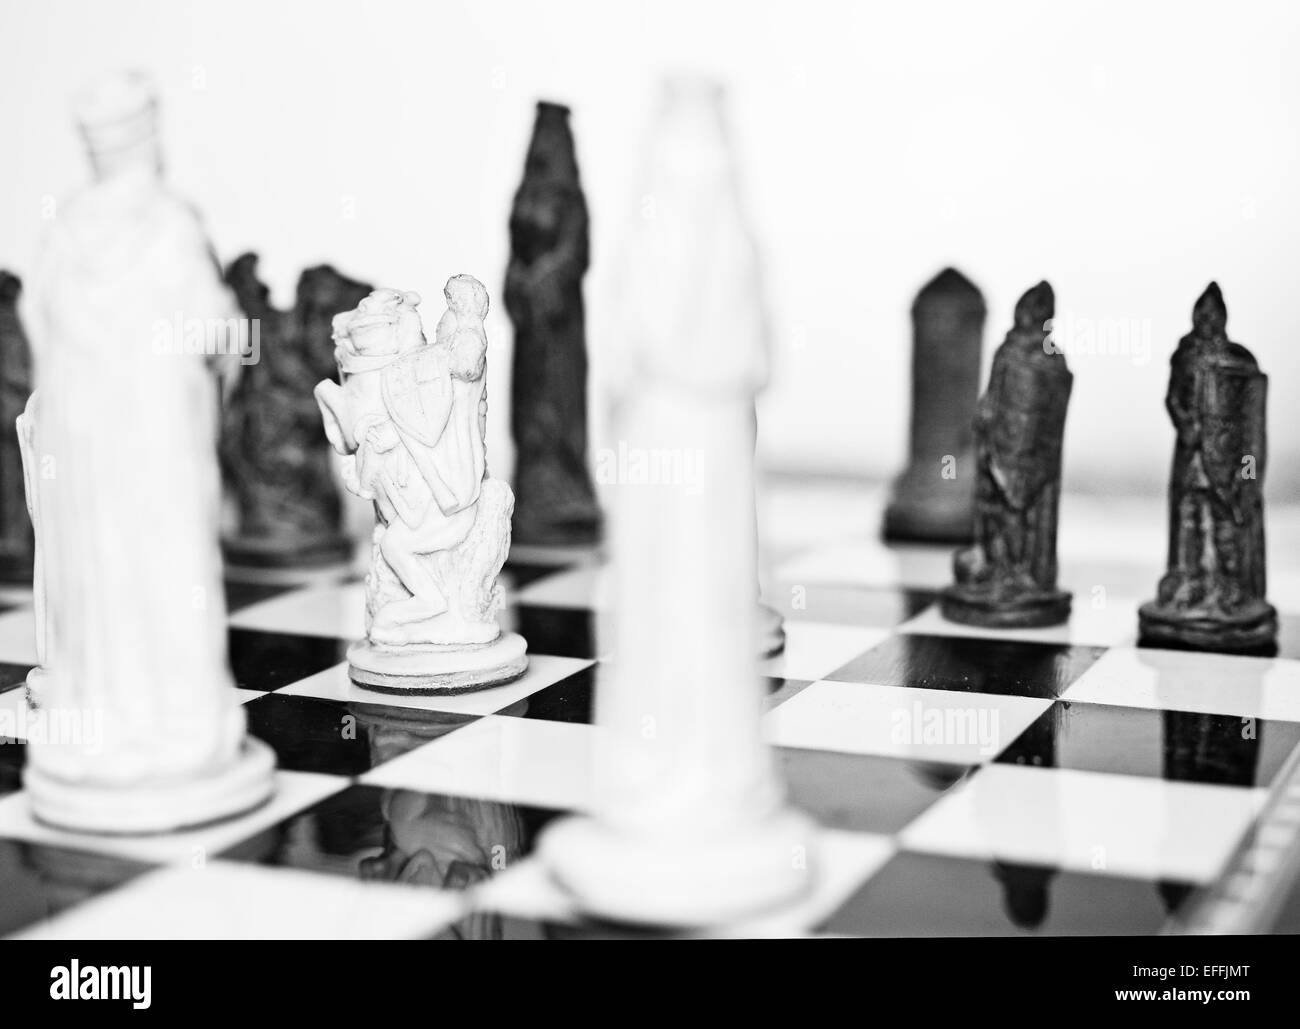 Jeu d'échecs en noir et blanc, selective focus on le chevalier blanc . Concept de défi, la tactique et la stratégie Banque D'Images